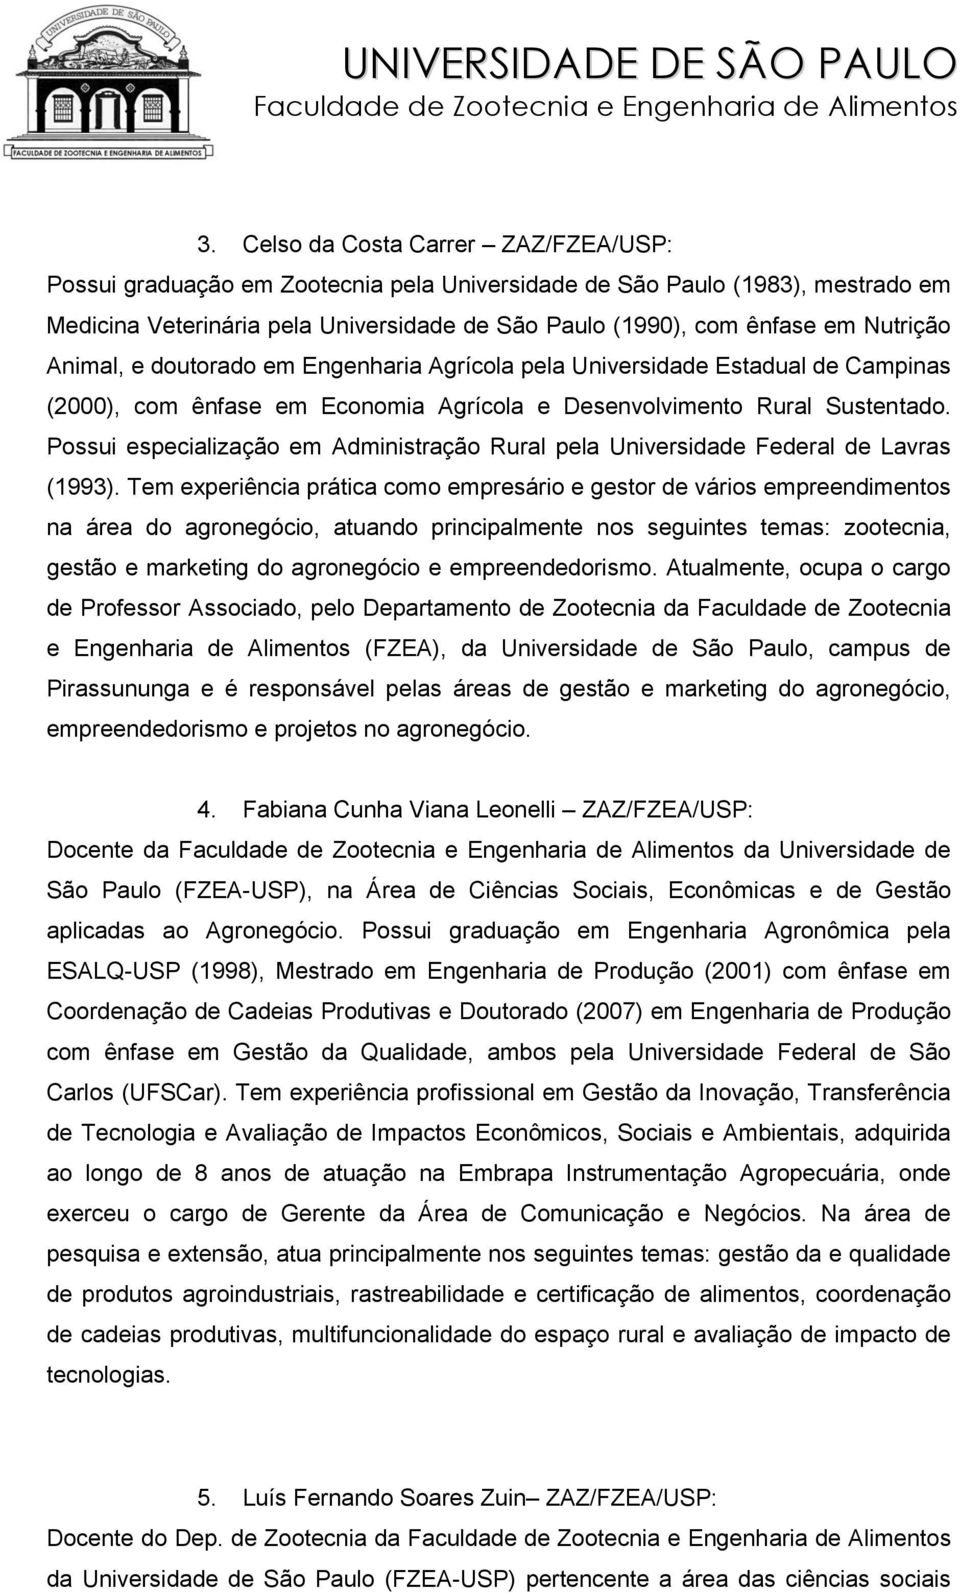 Possui especialização em Administração Rural pela Universidade Federal de Lavras (1993).